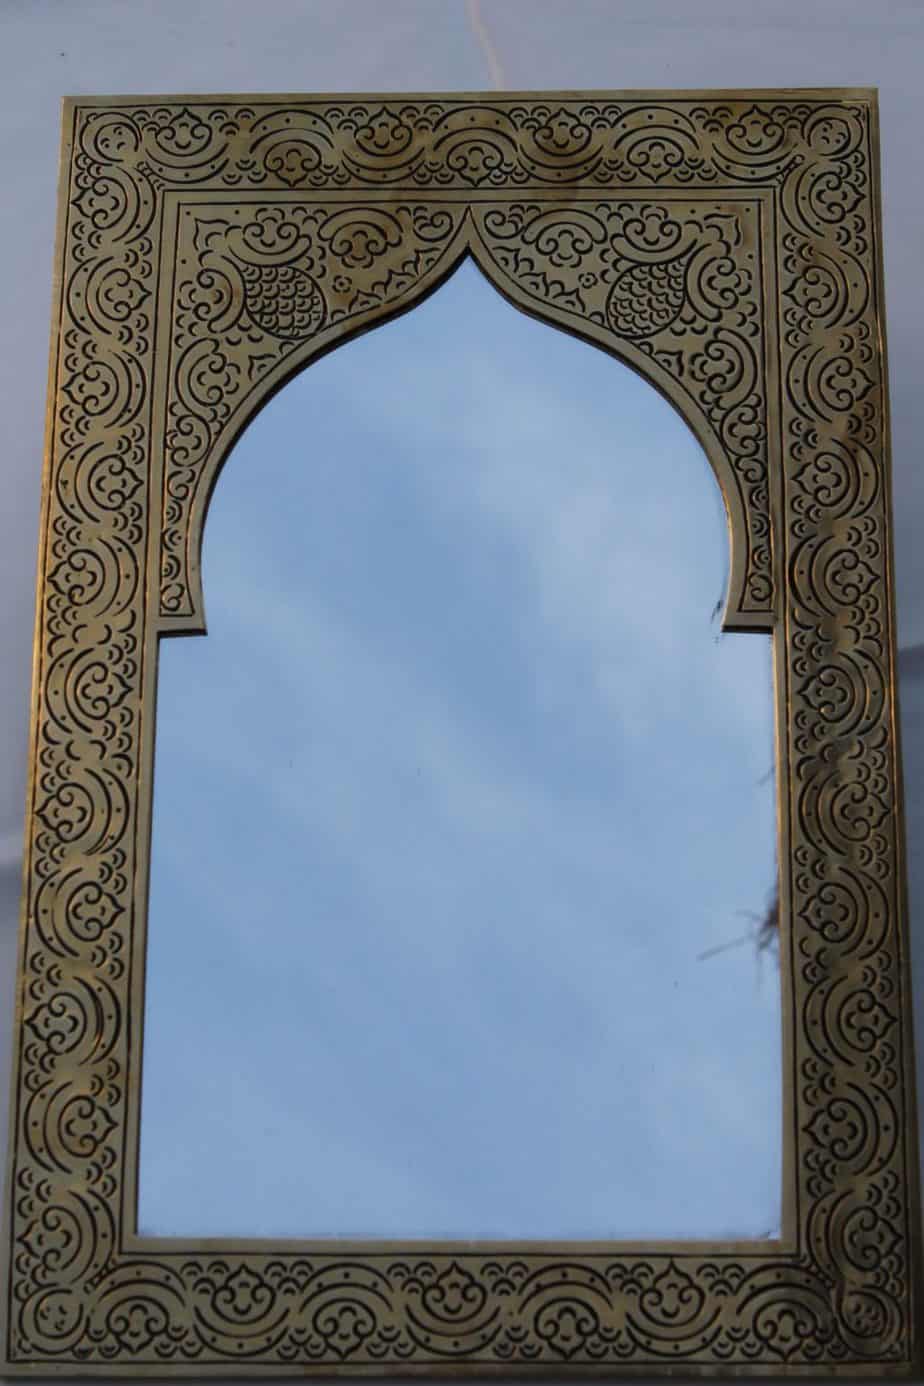 Moroccon style garden mirror